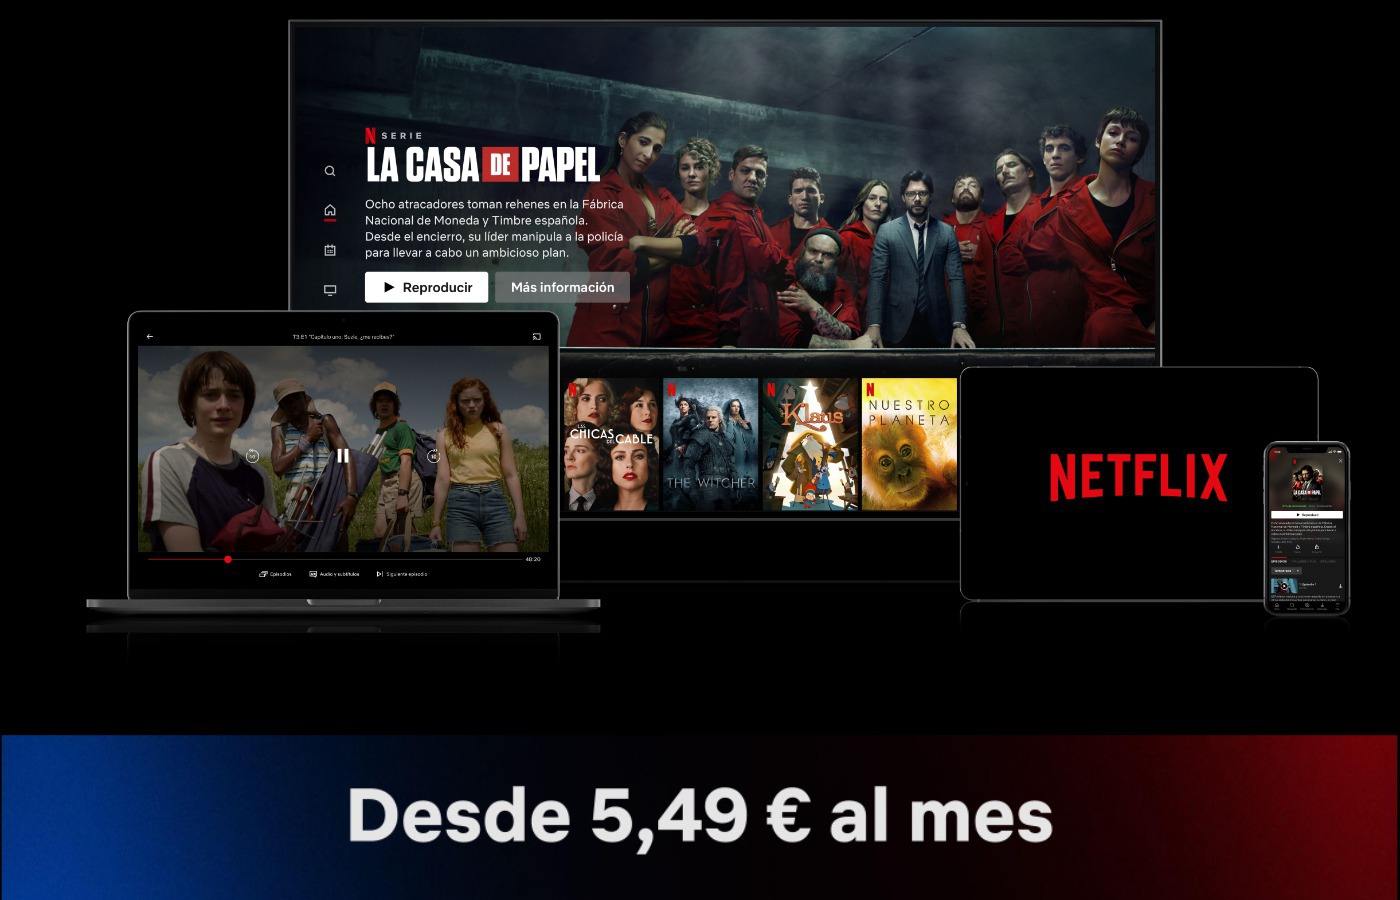 El nuevo plan de Netflix por 5,49€ al mes con publicidad